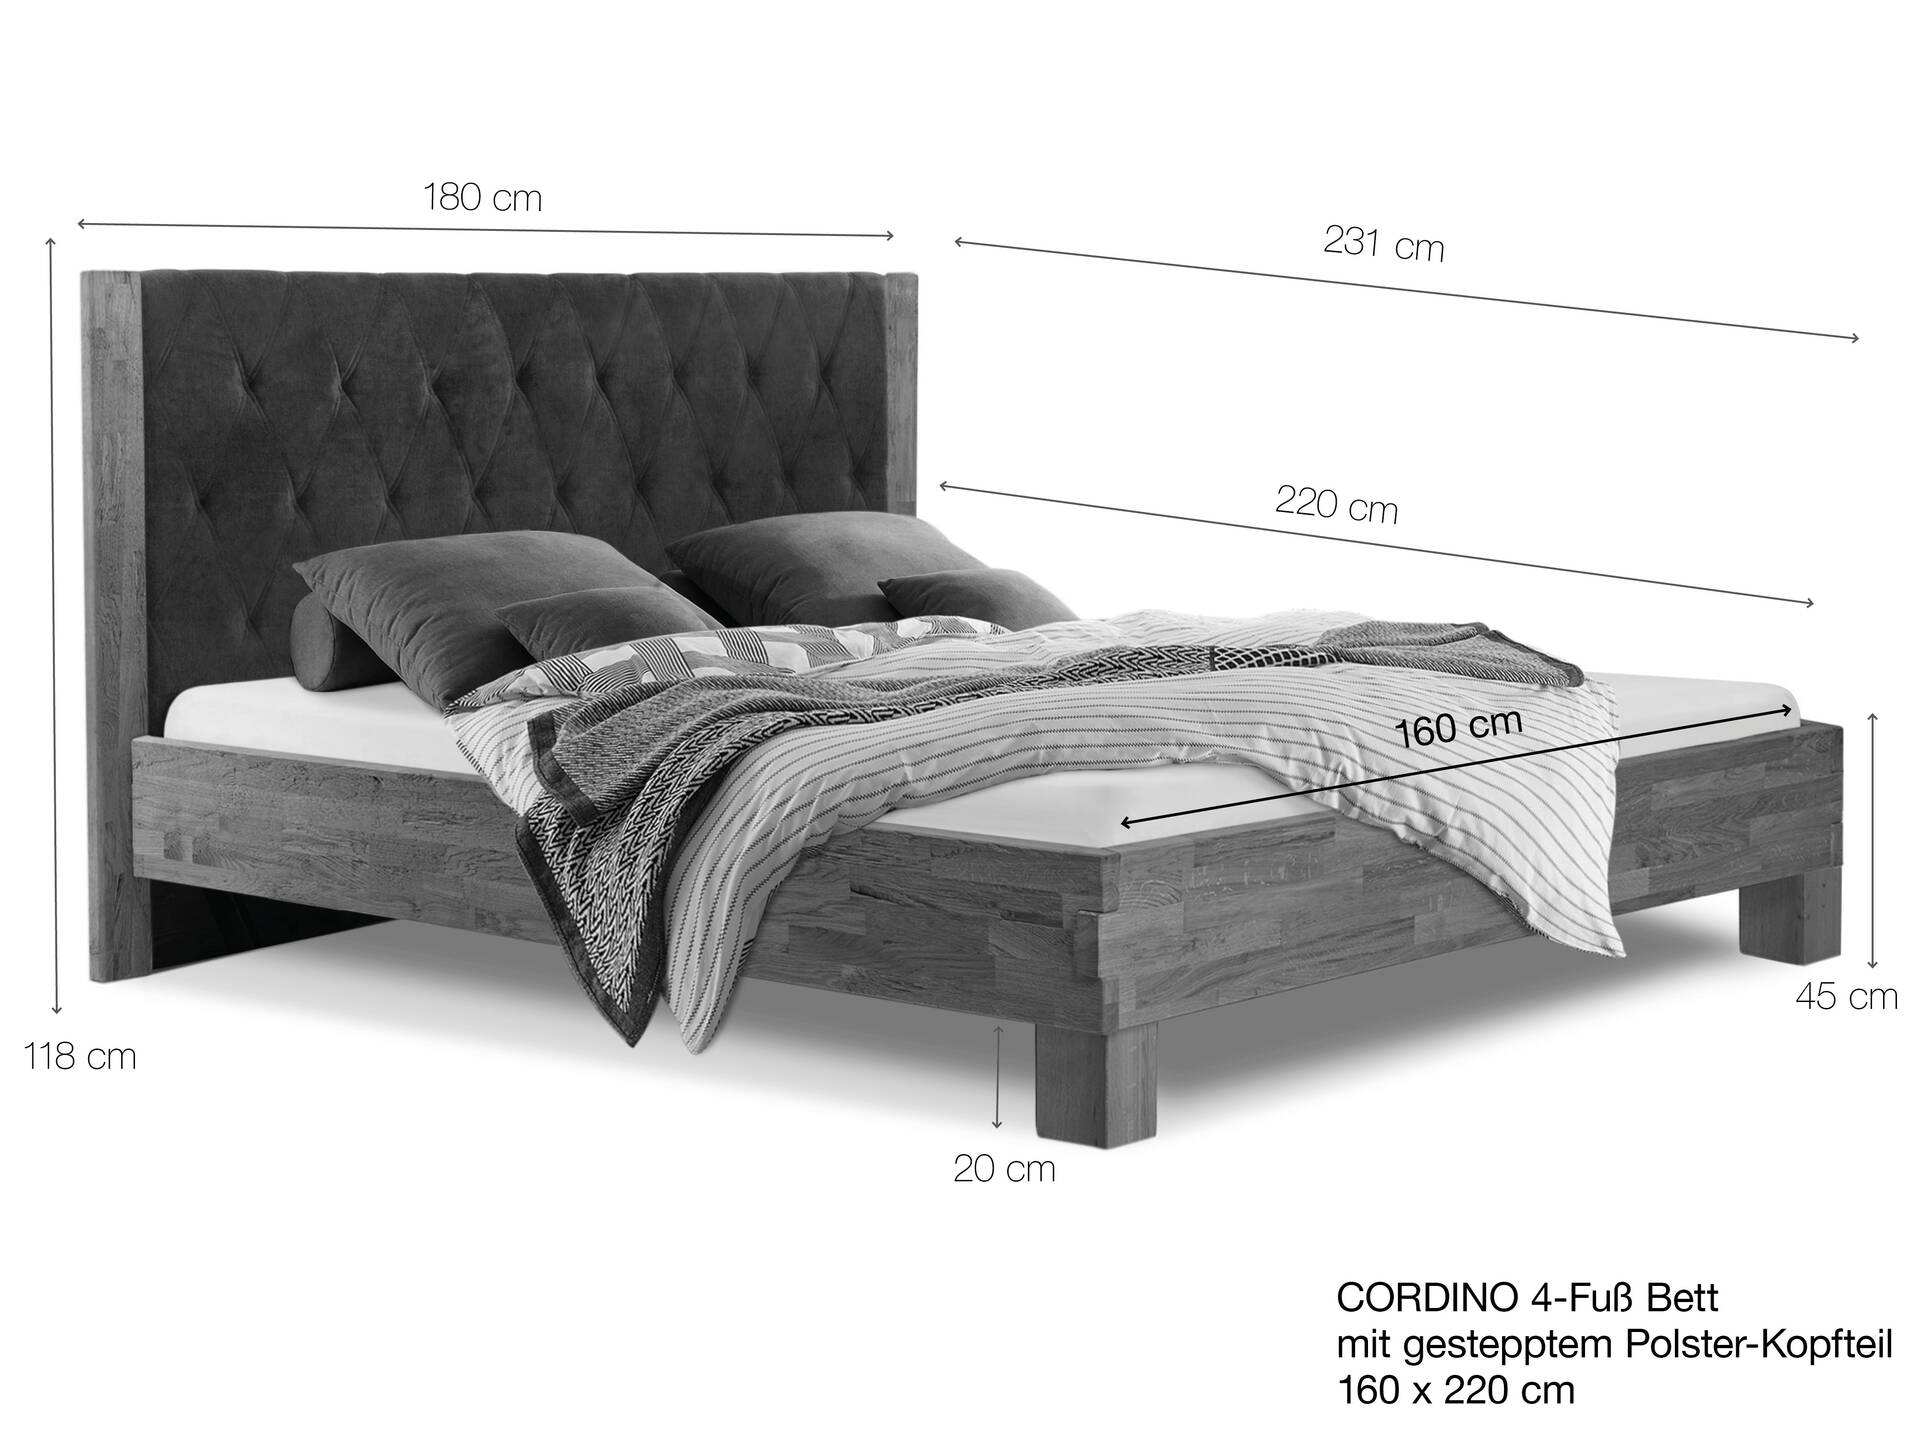 CORDINO 4-Fuß-Bett aus Eiche mit gestepptem Polster-Kopfteil, Material Massivholz 160 x 220 cm | Eiche lackiert | Stoff Braun | gebürstet